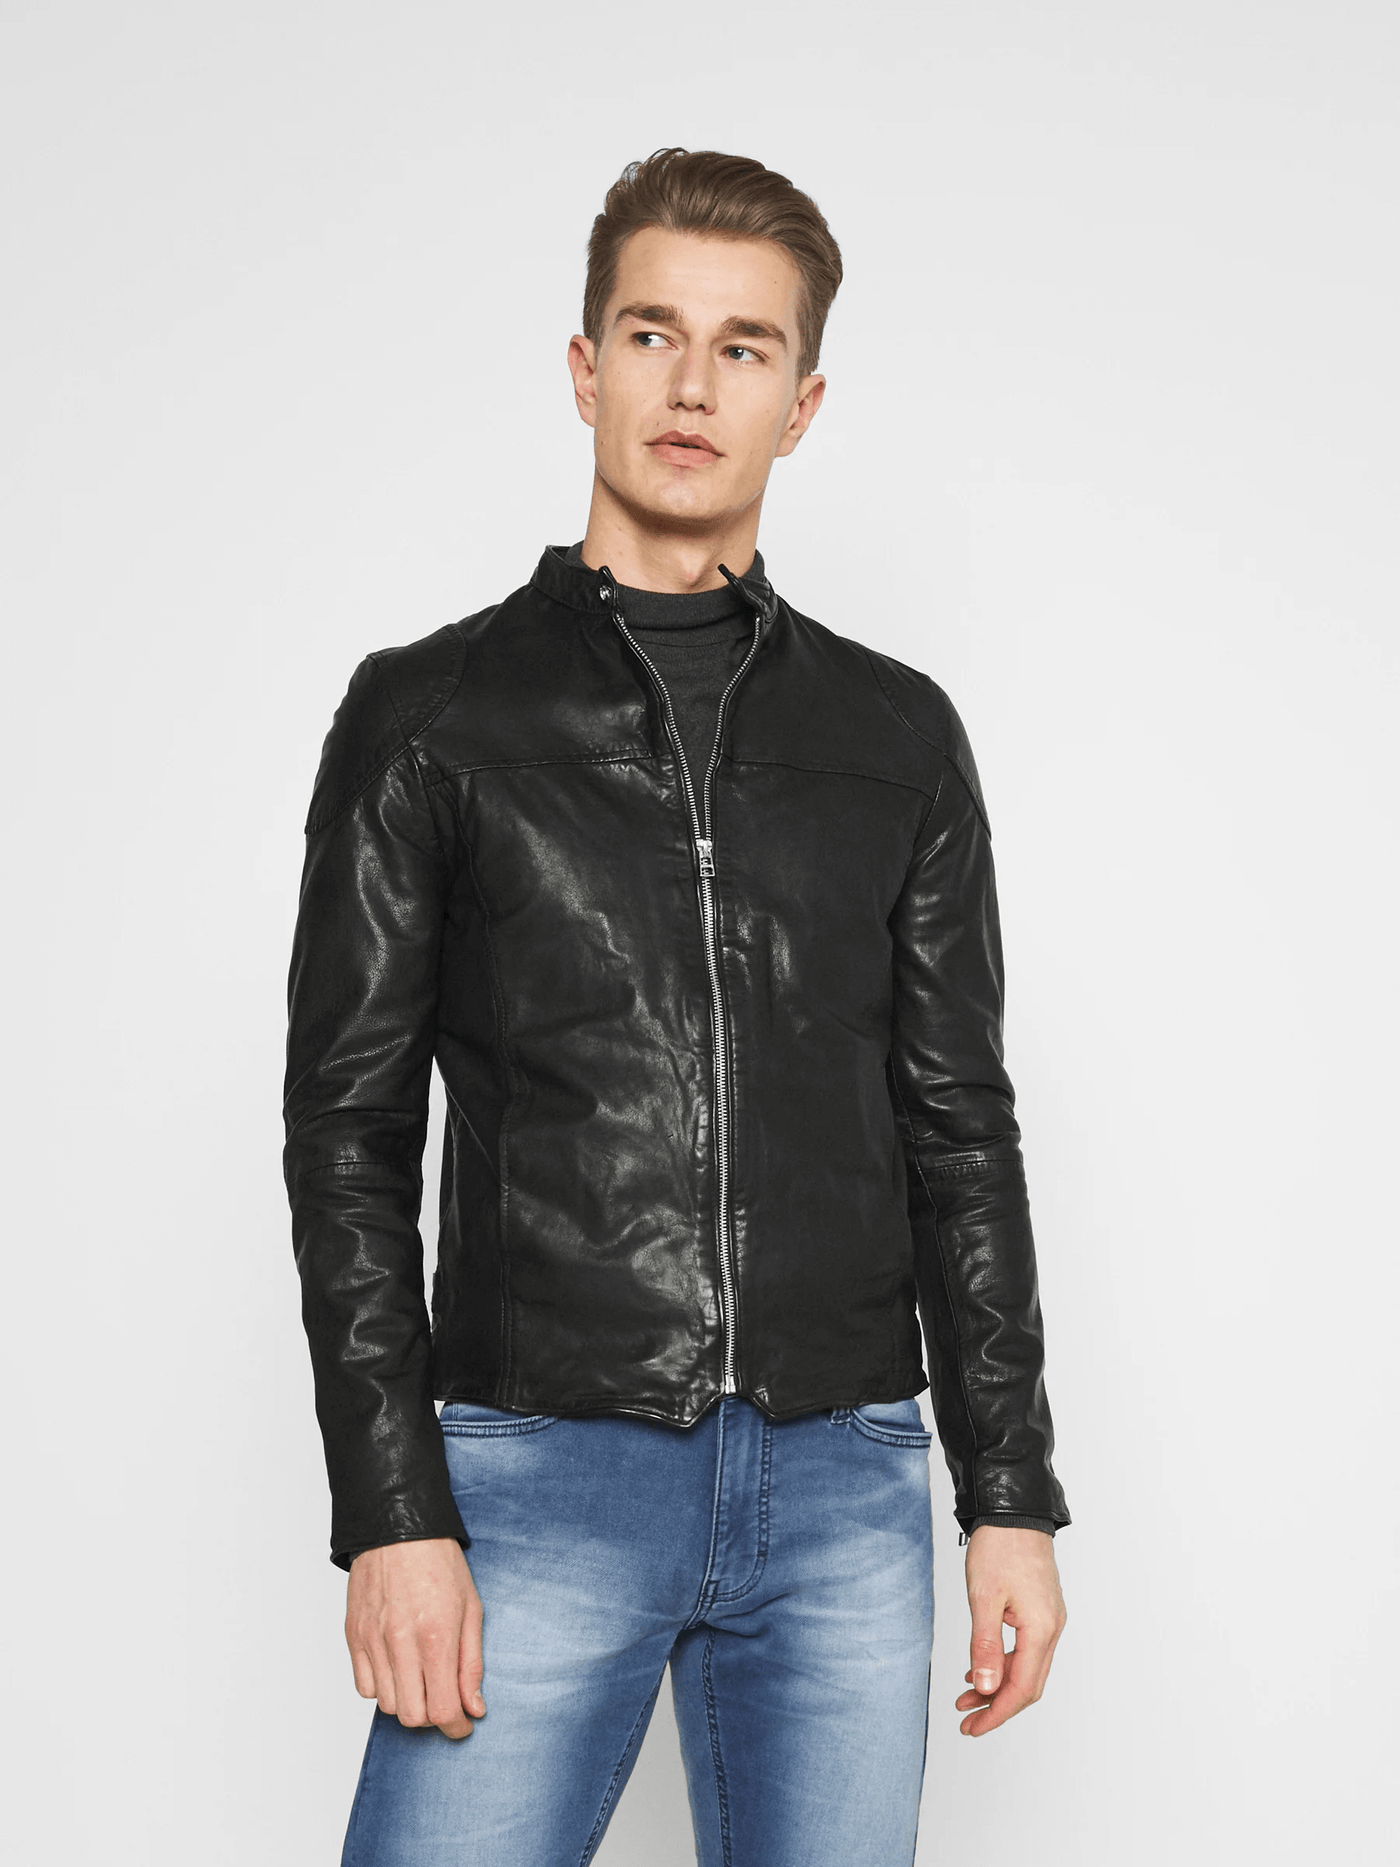 Arnie Black Leather Jacket